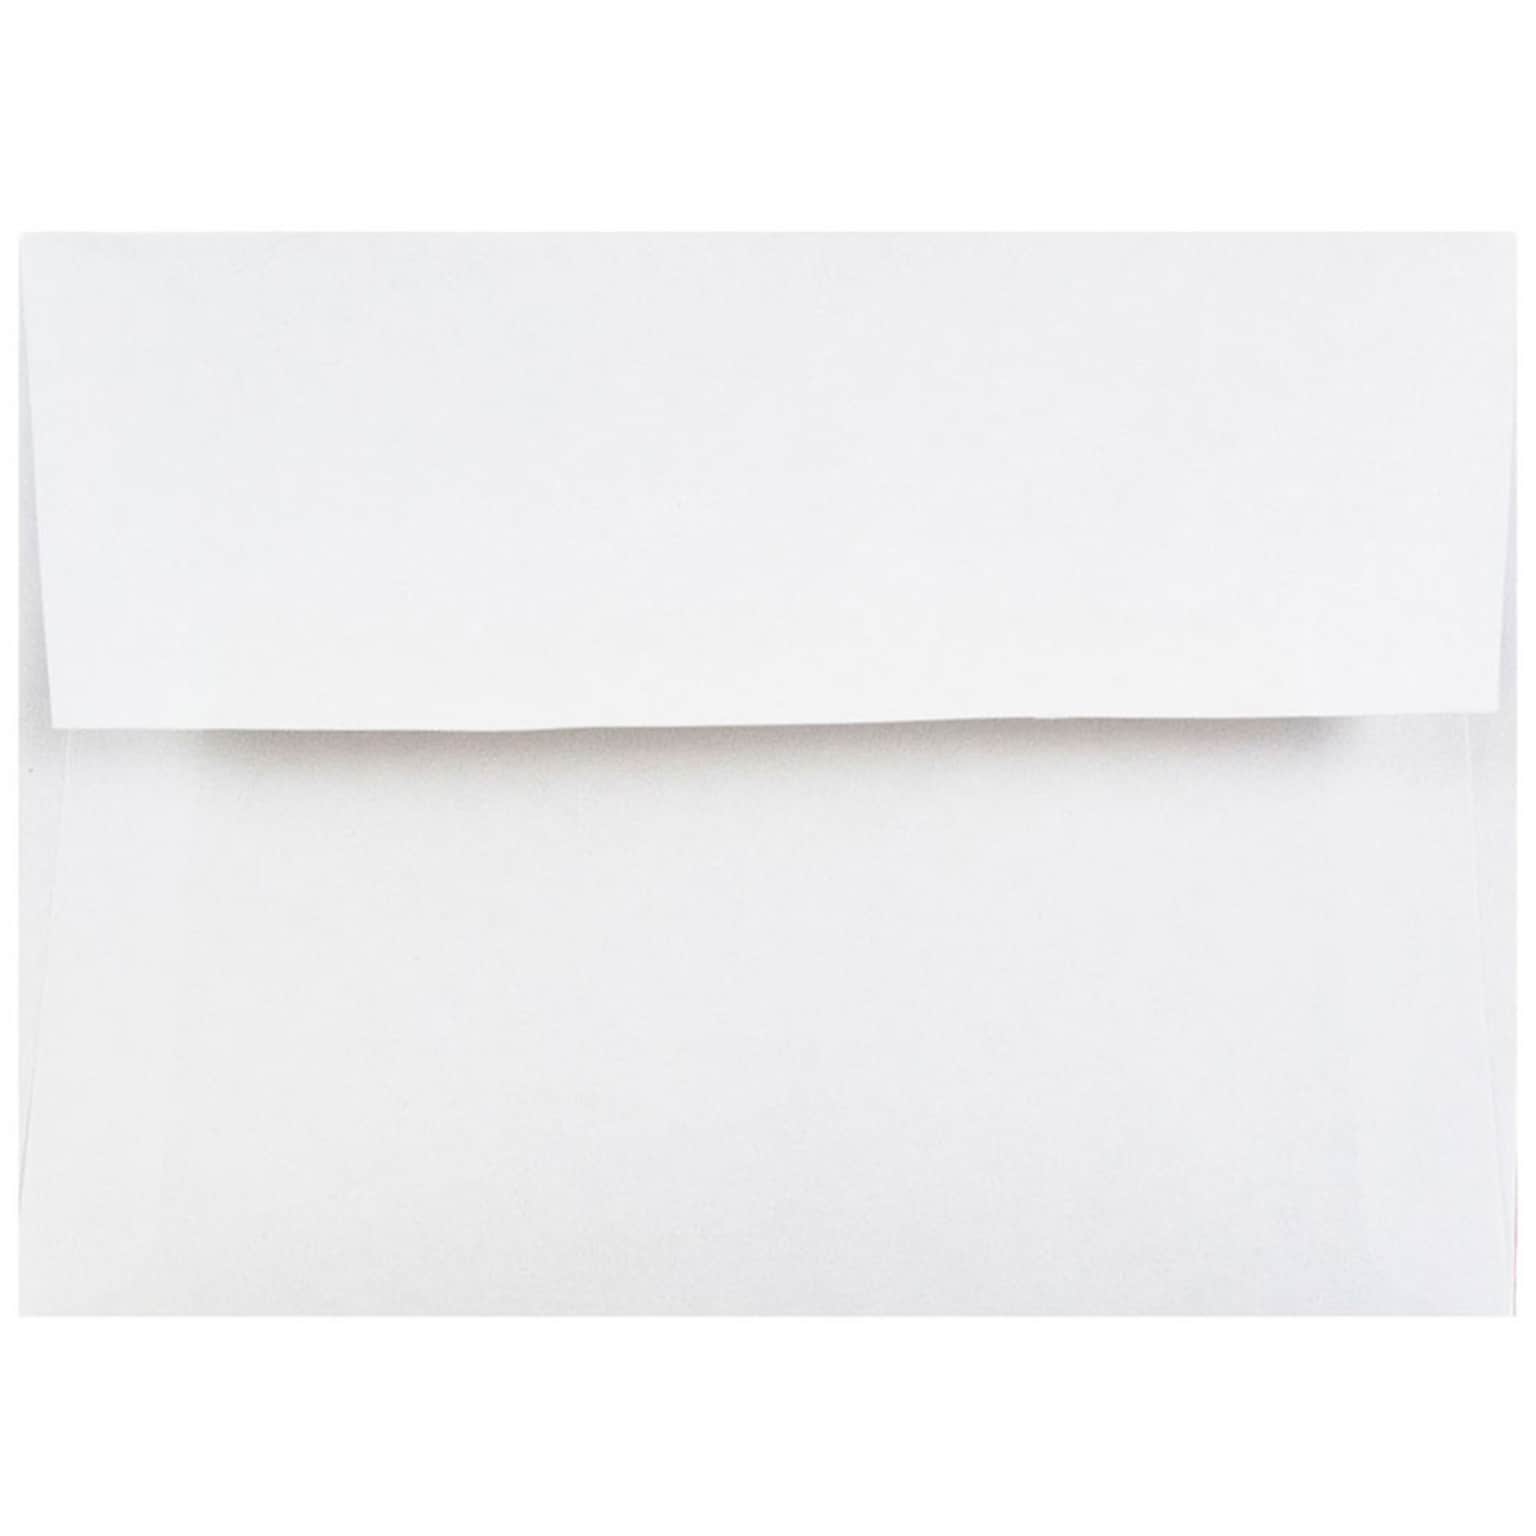 JAM Paper 4Bar A1 Invitation Envelopes, 3.625 x 5.125, White, 25/Pack (47385)